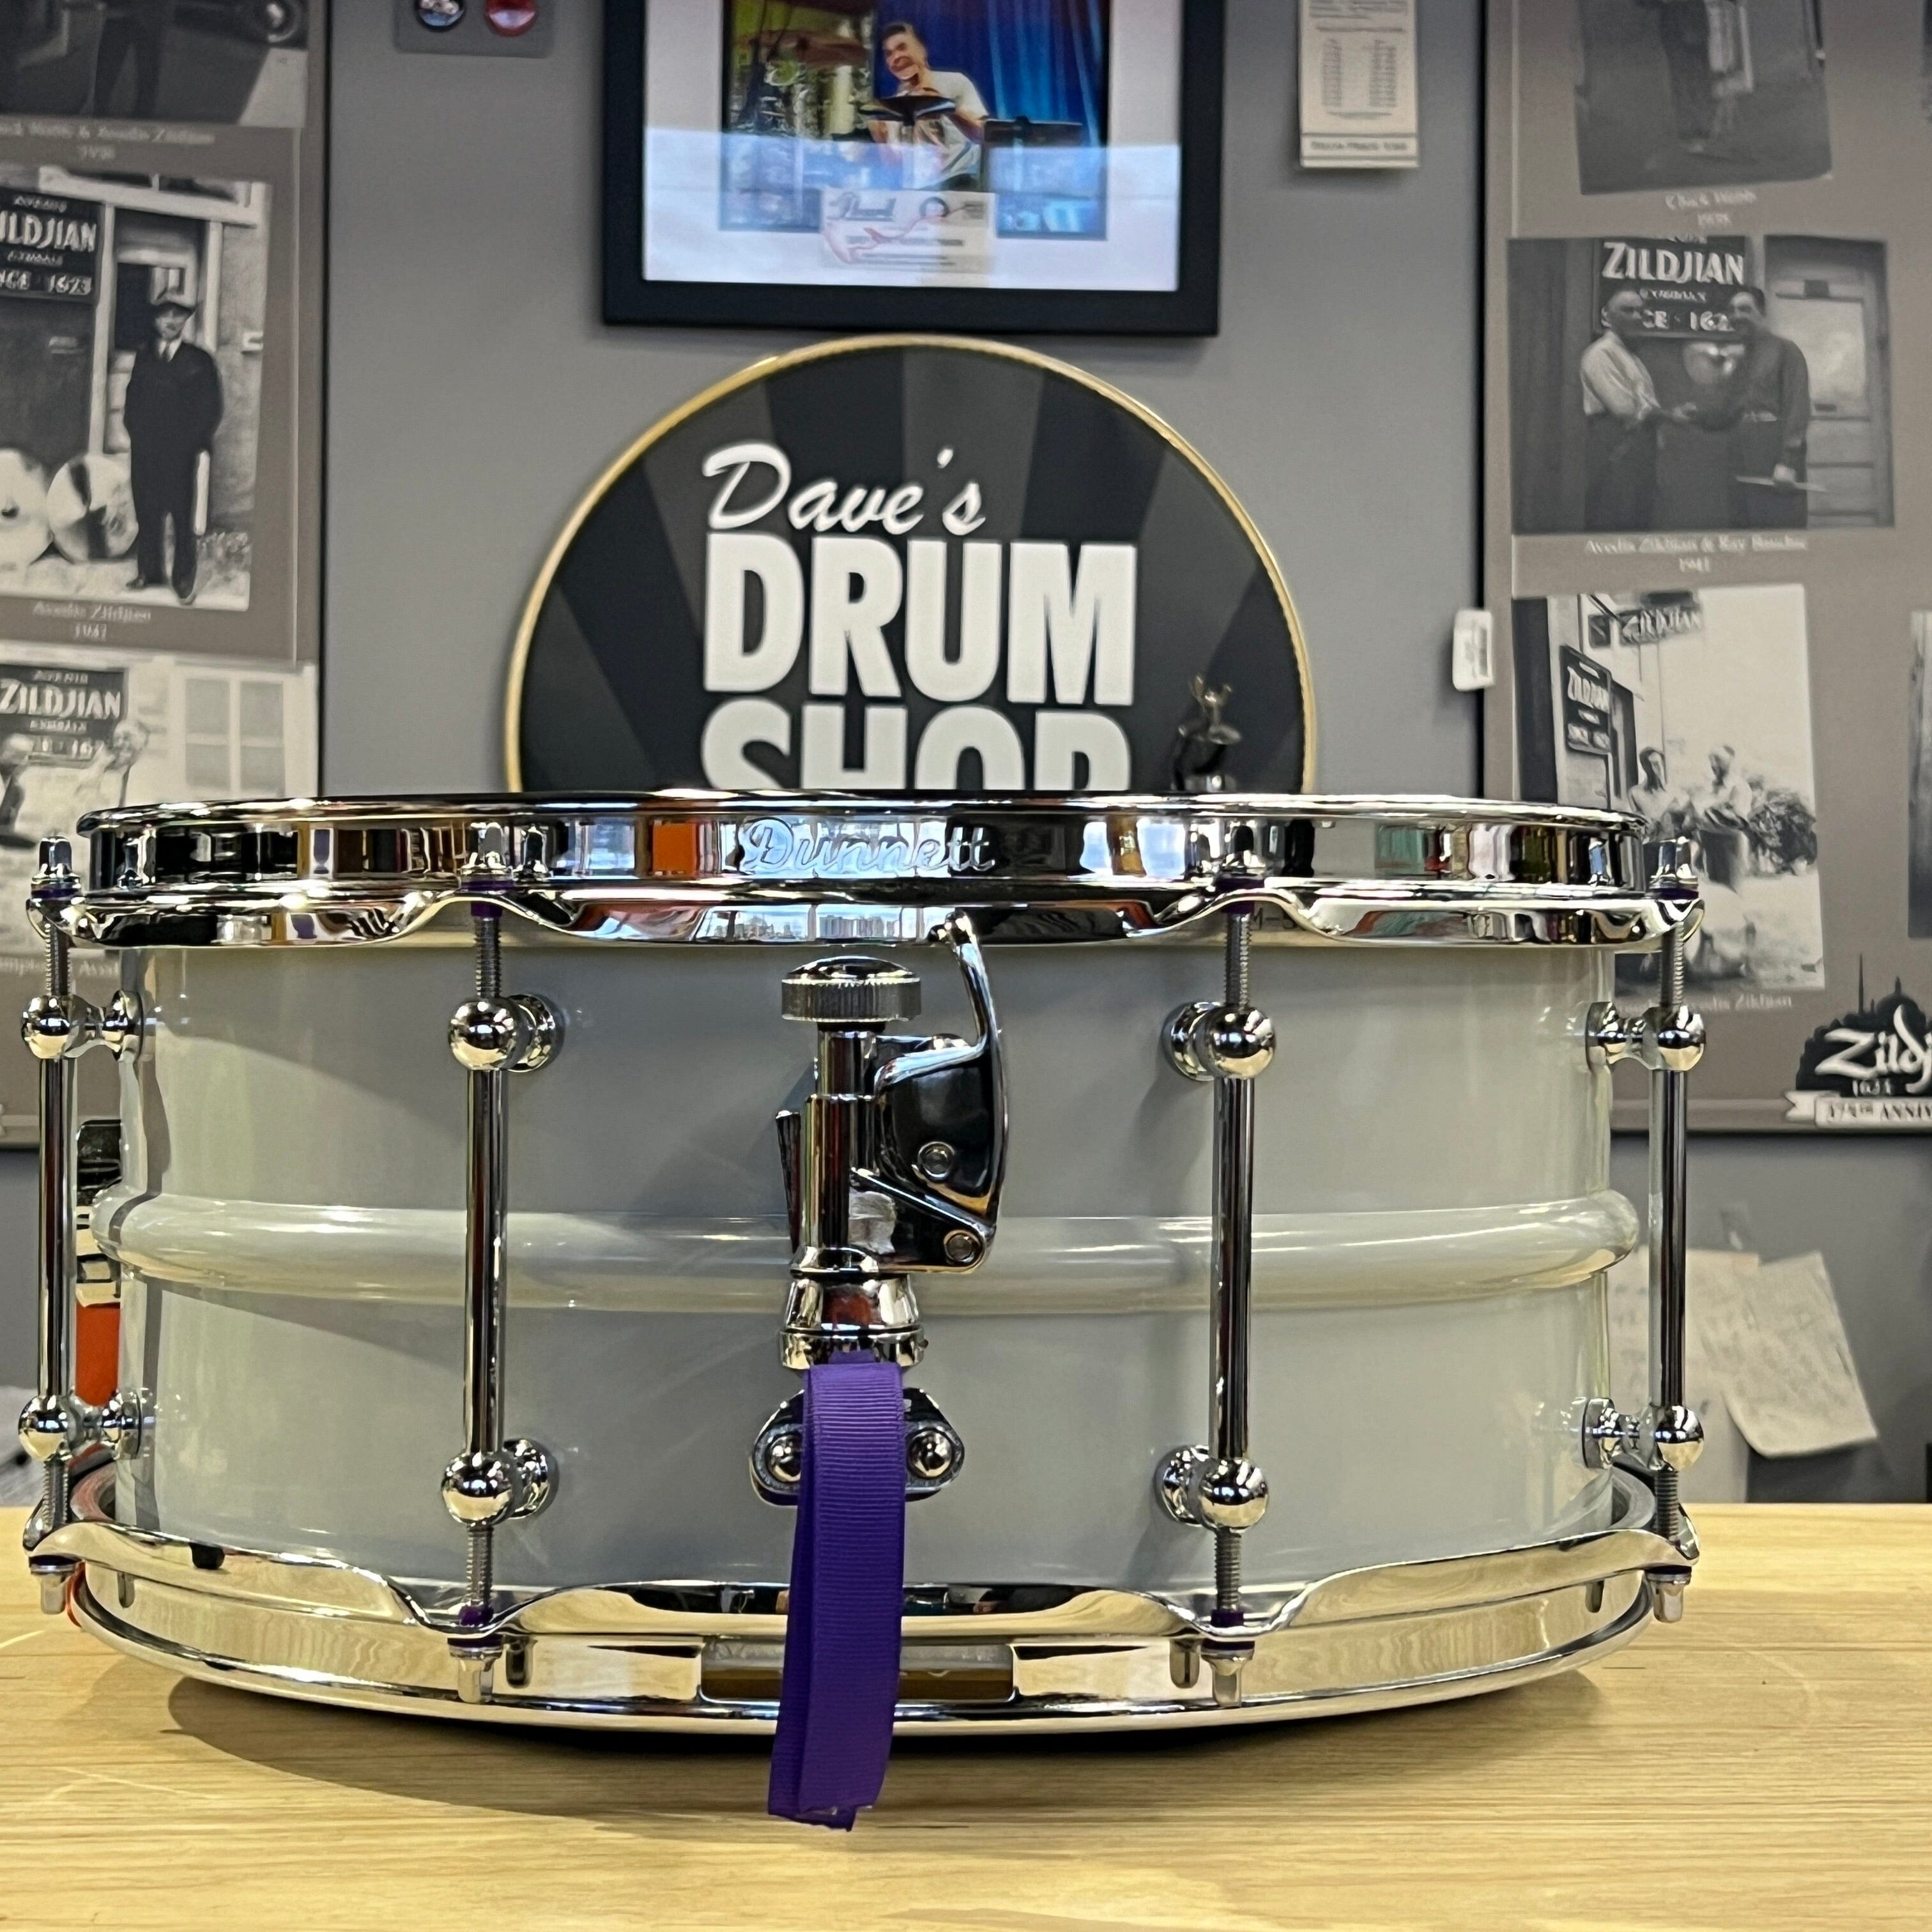 Dunnett Classic 2N Snare Drum, Gray, 6.5x14 (65142N-CS) NEW SNARE DRUMS Dunnett Classic Drums 